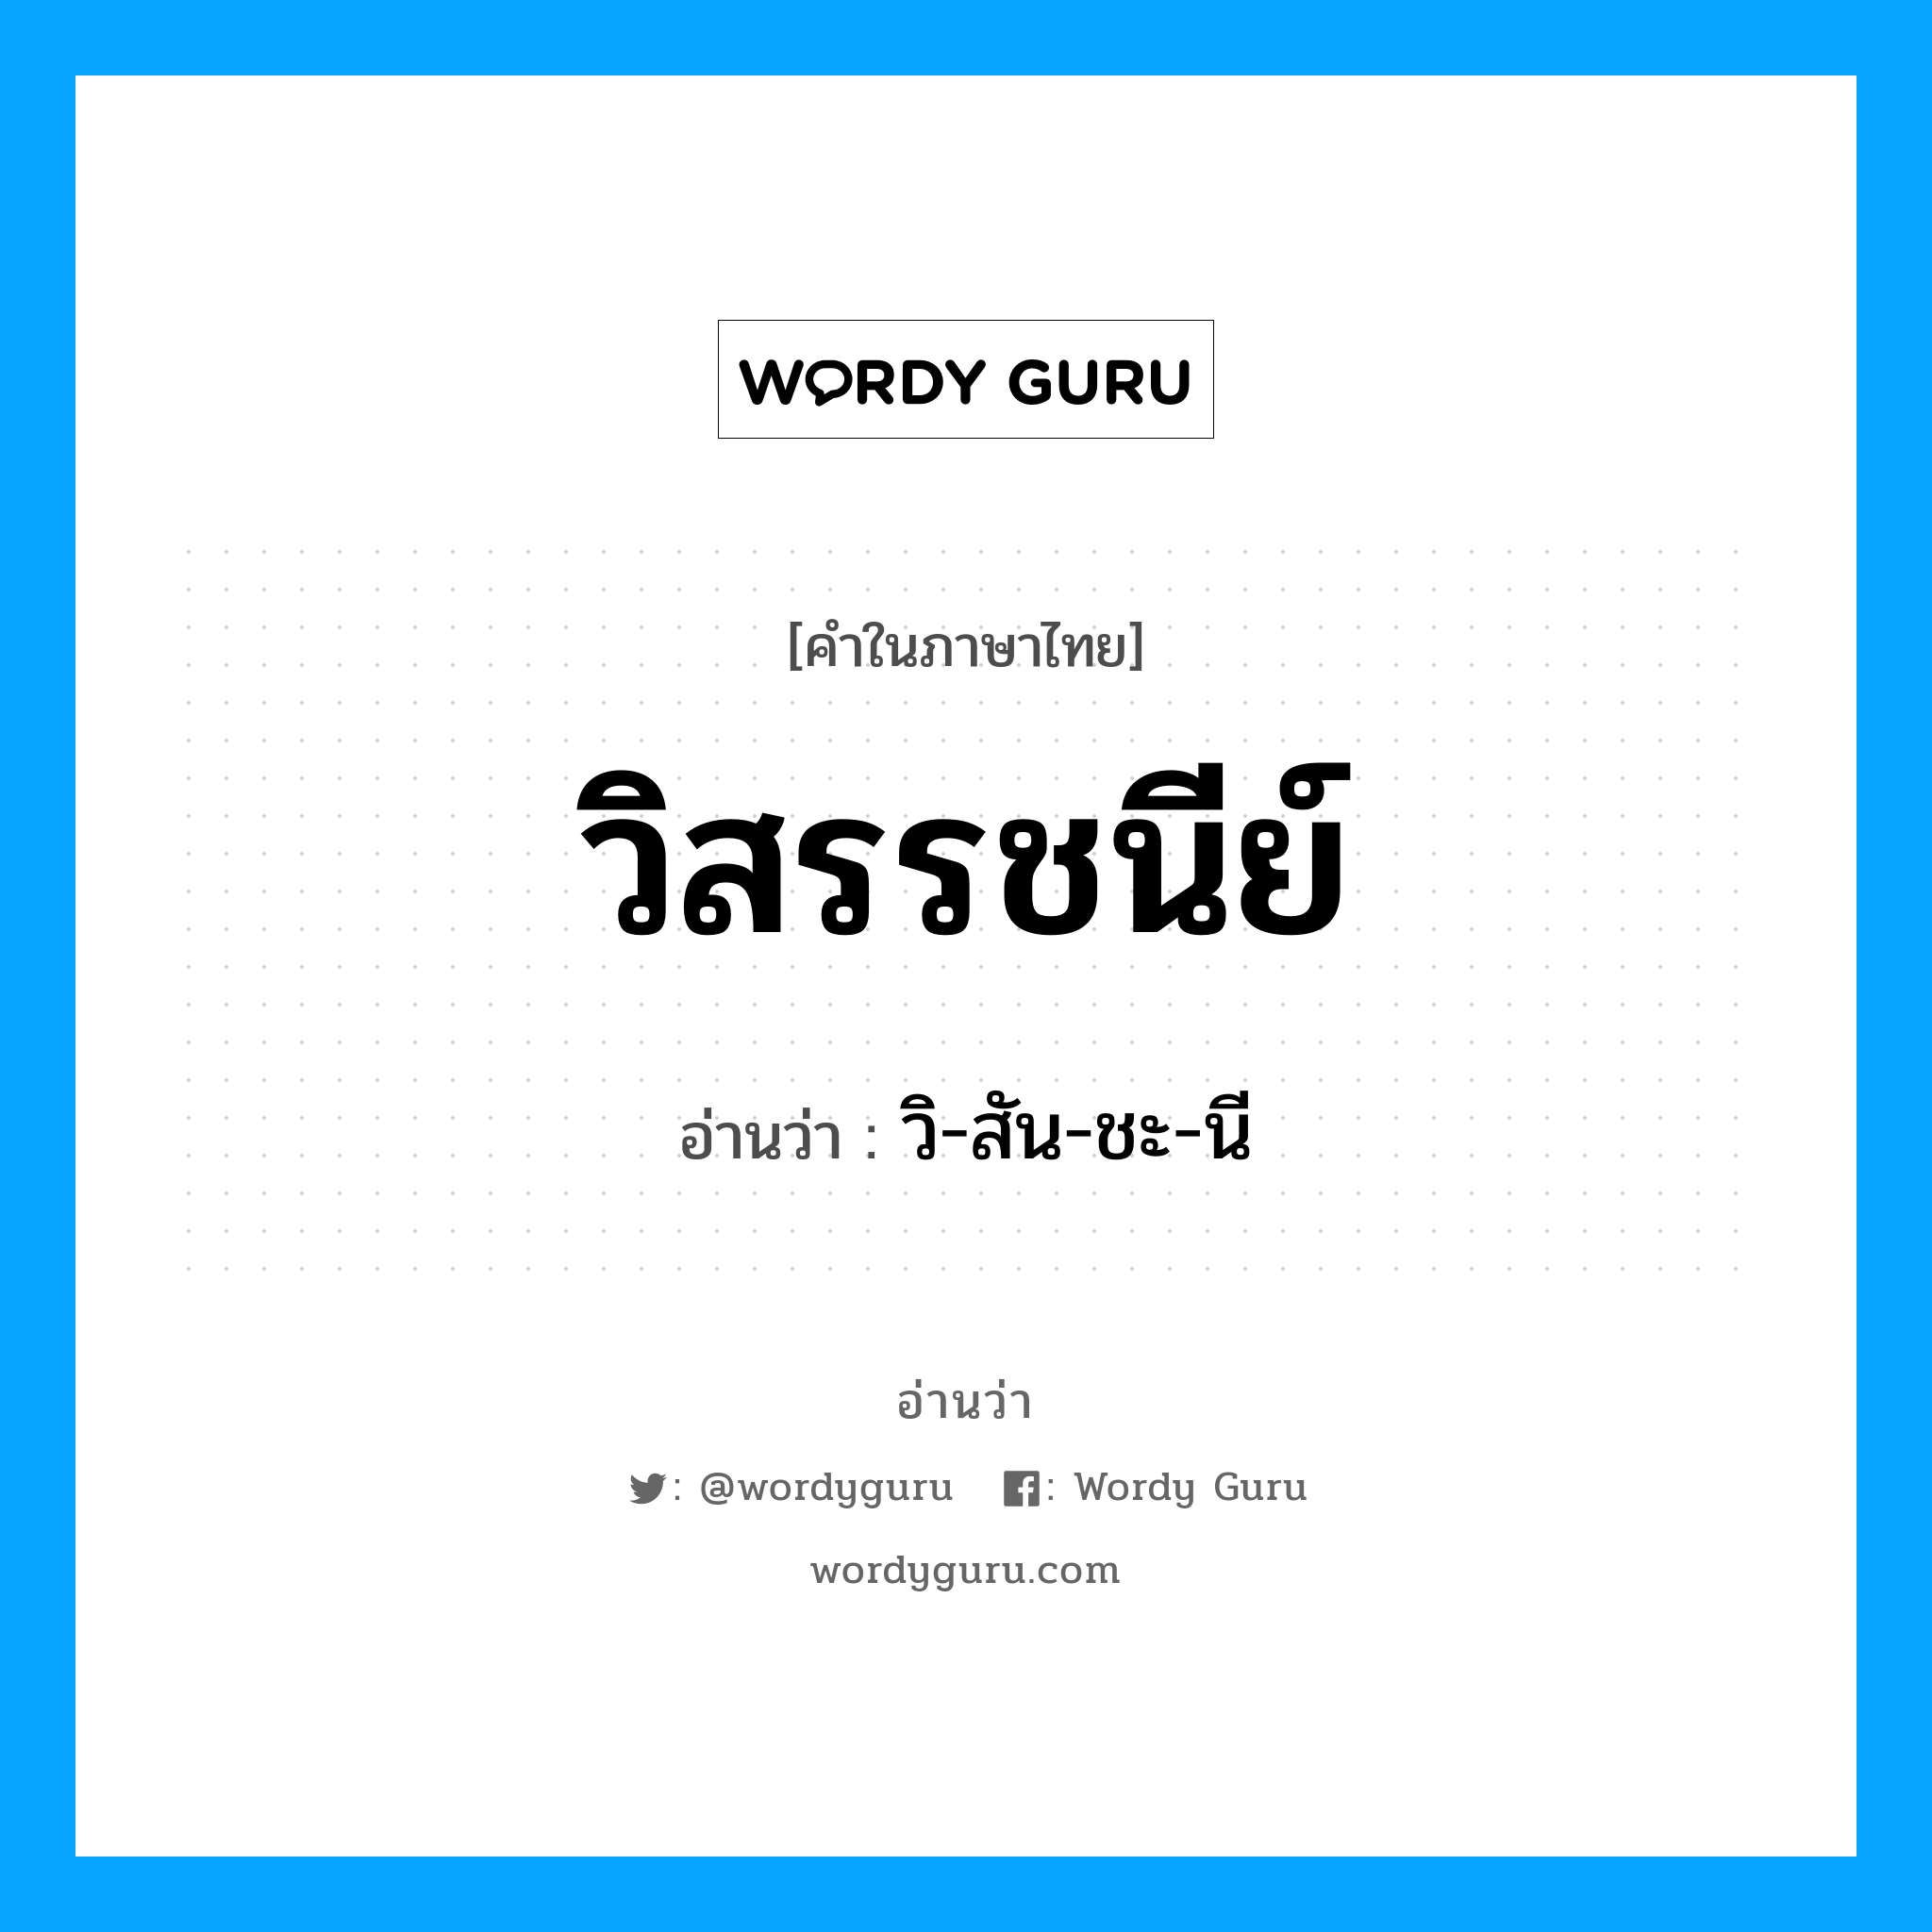 วิ-สัน-ชะ-นี เป็นคำอ่านของคำไหน?, คำในภาษาไทย วิ-สัน-ชะ-นี อ่านว่า วิสรรชนีย์